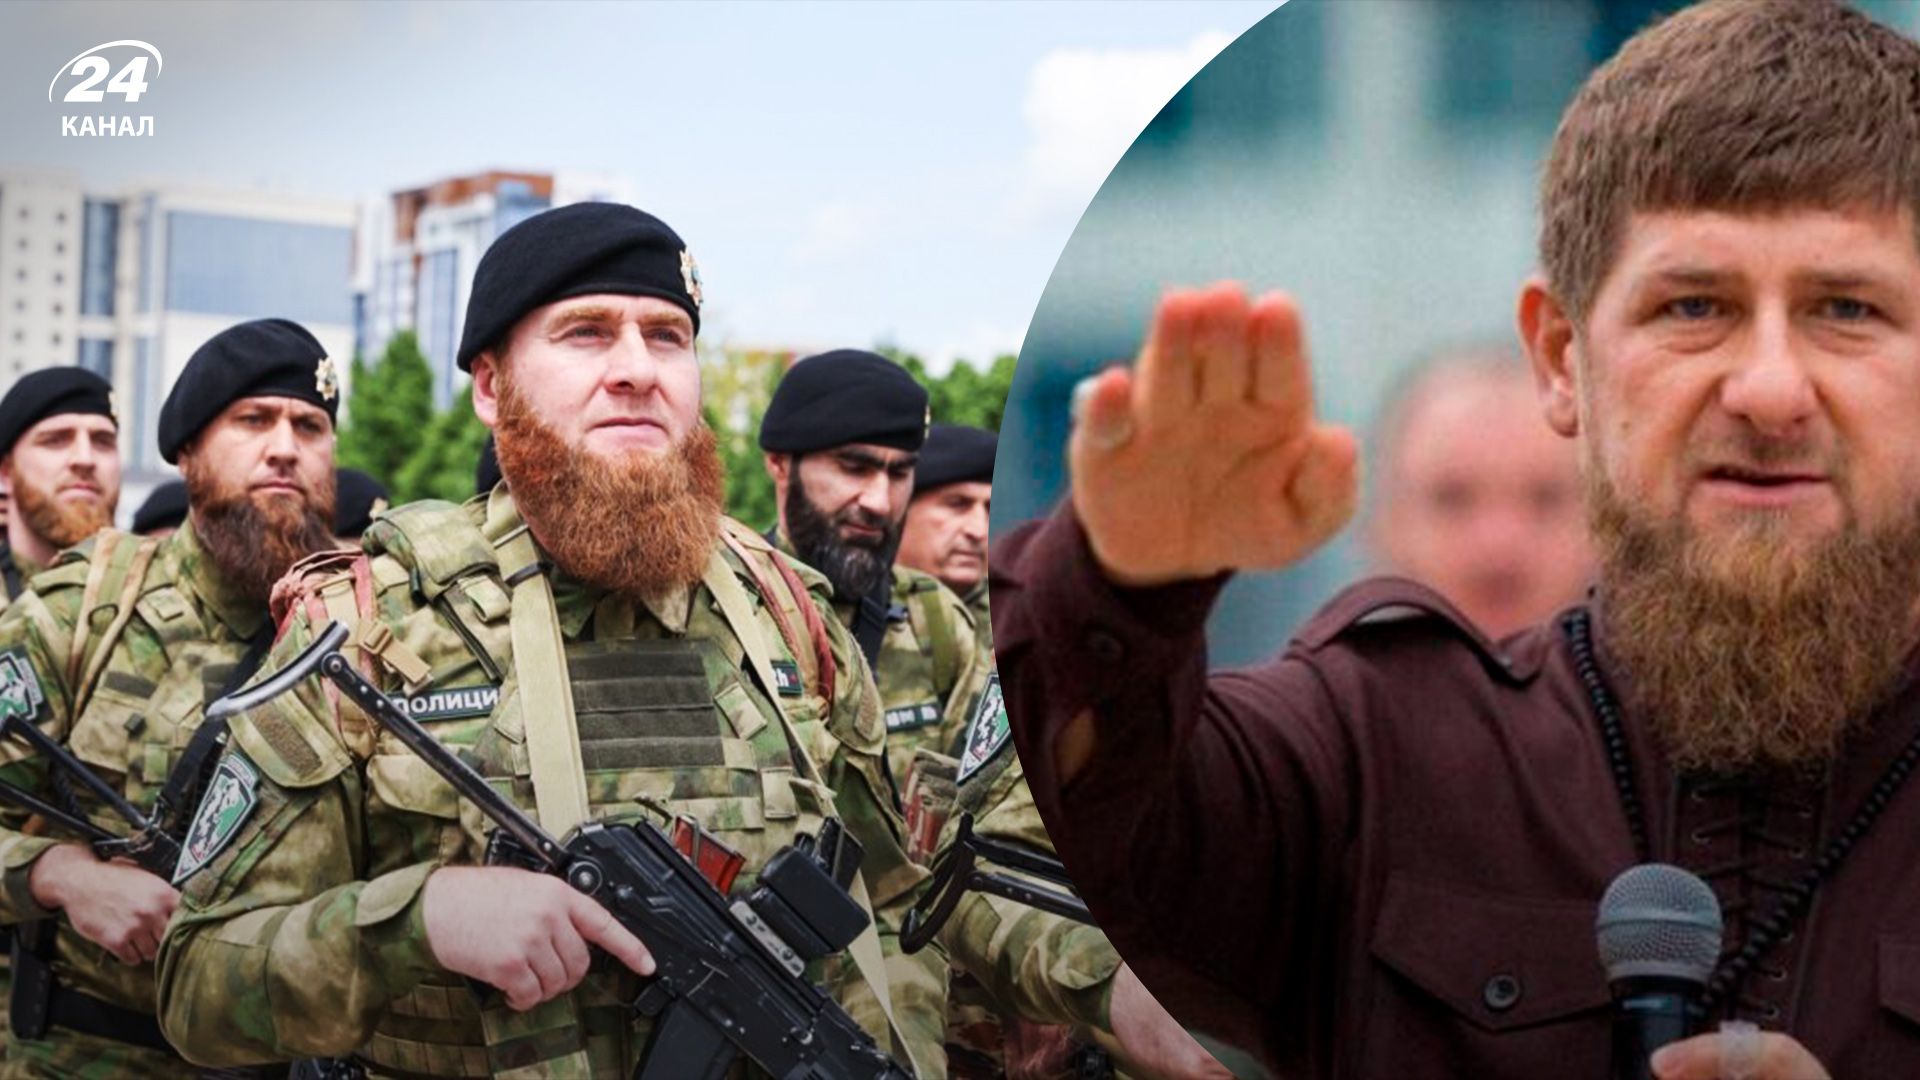 Рамзан Кадров, Чечня – як вивести кадирівців з війни, прогноз